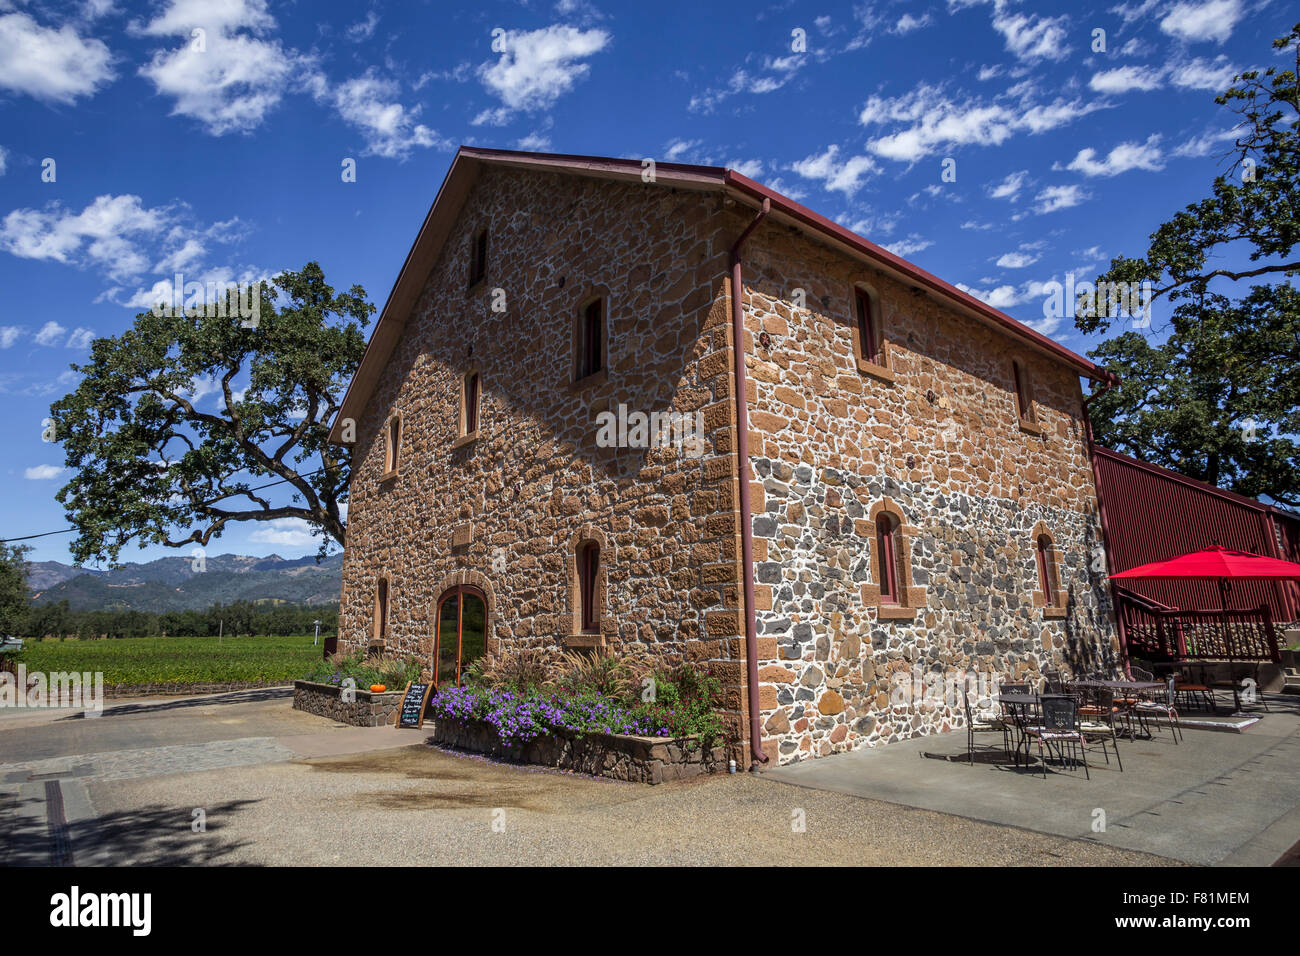 Grange en pierre, salle de dégustation de vins, Ehlers Estate Winery, Ehlers Lane, St Helena, Napa Valley, California, United States, Amérique du Nord Banque D'Images